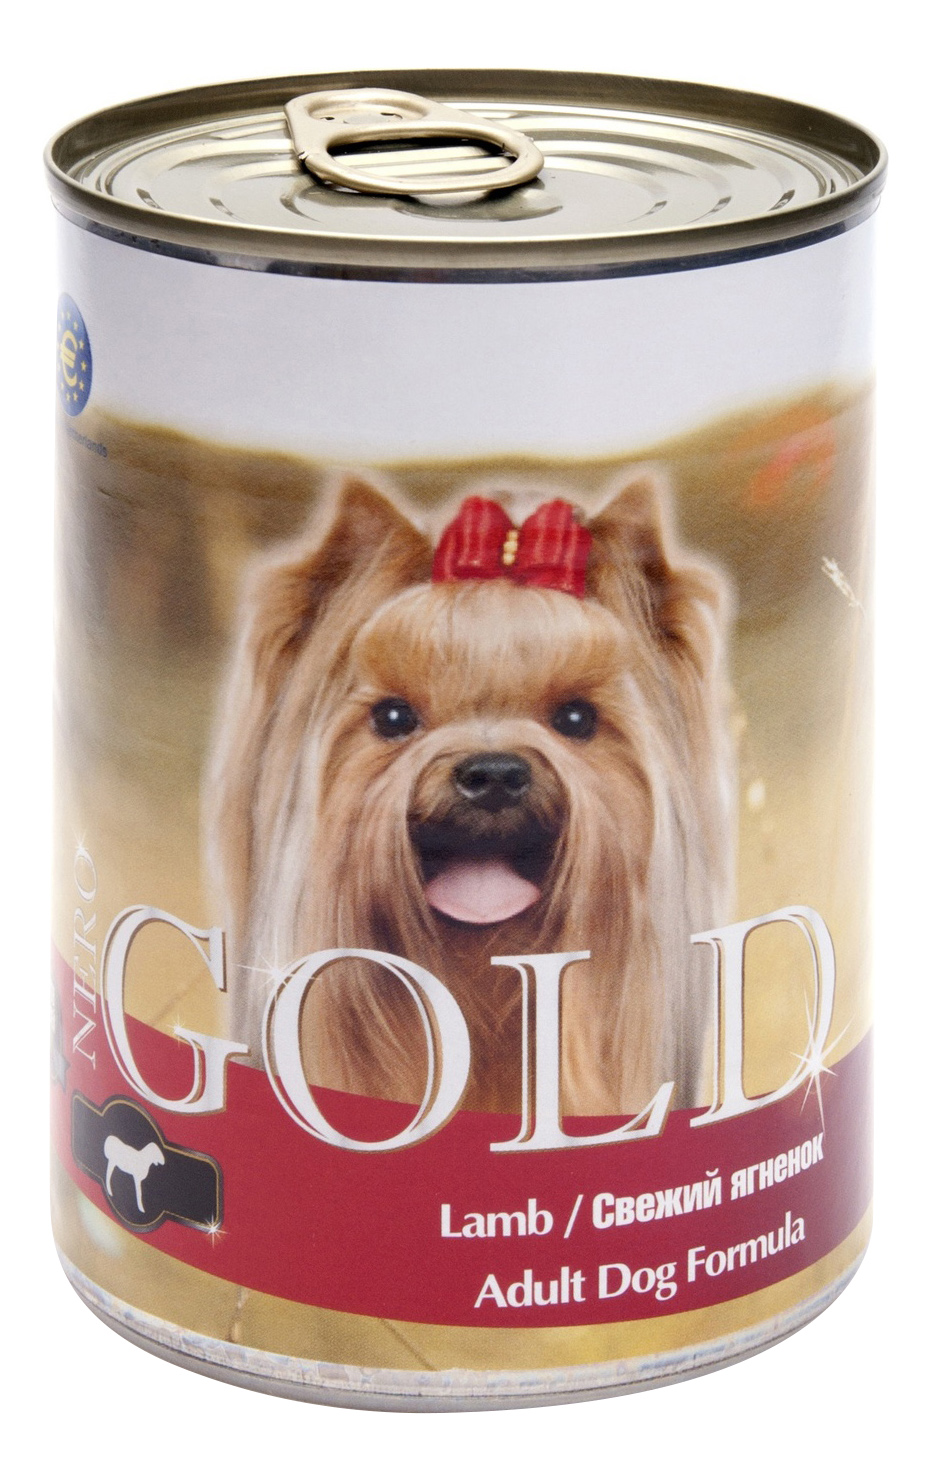 фото Консервы для собак nero gold adult dog formula, свежий ягненок, 12шт, 1250г